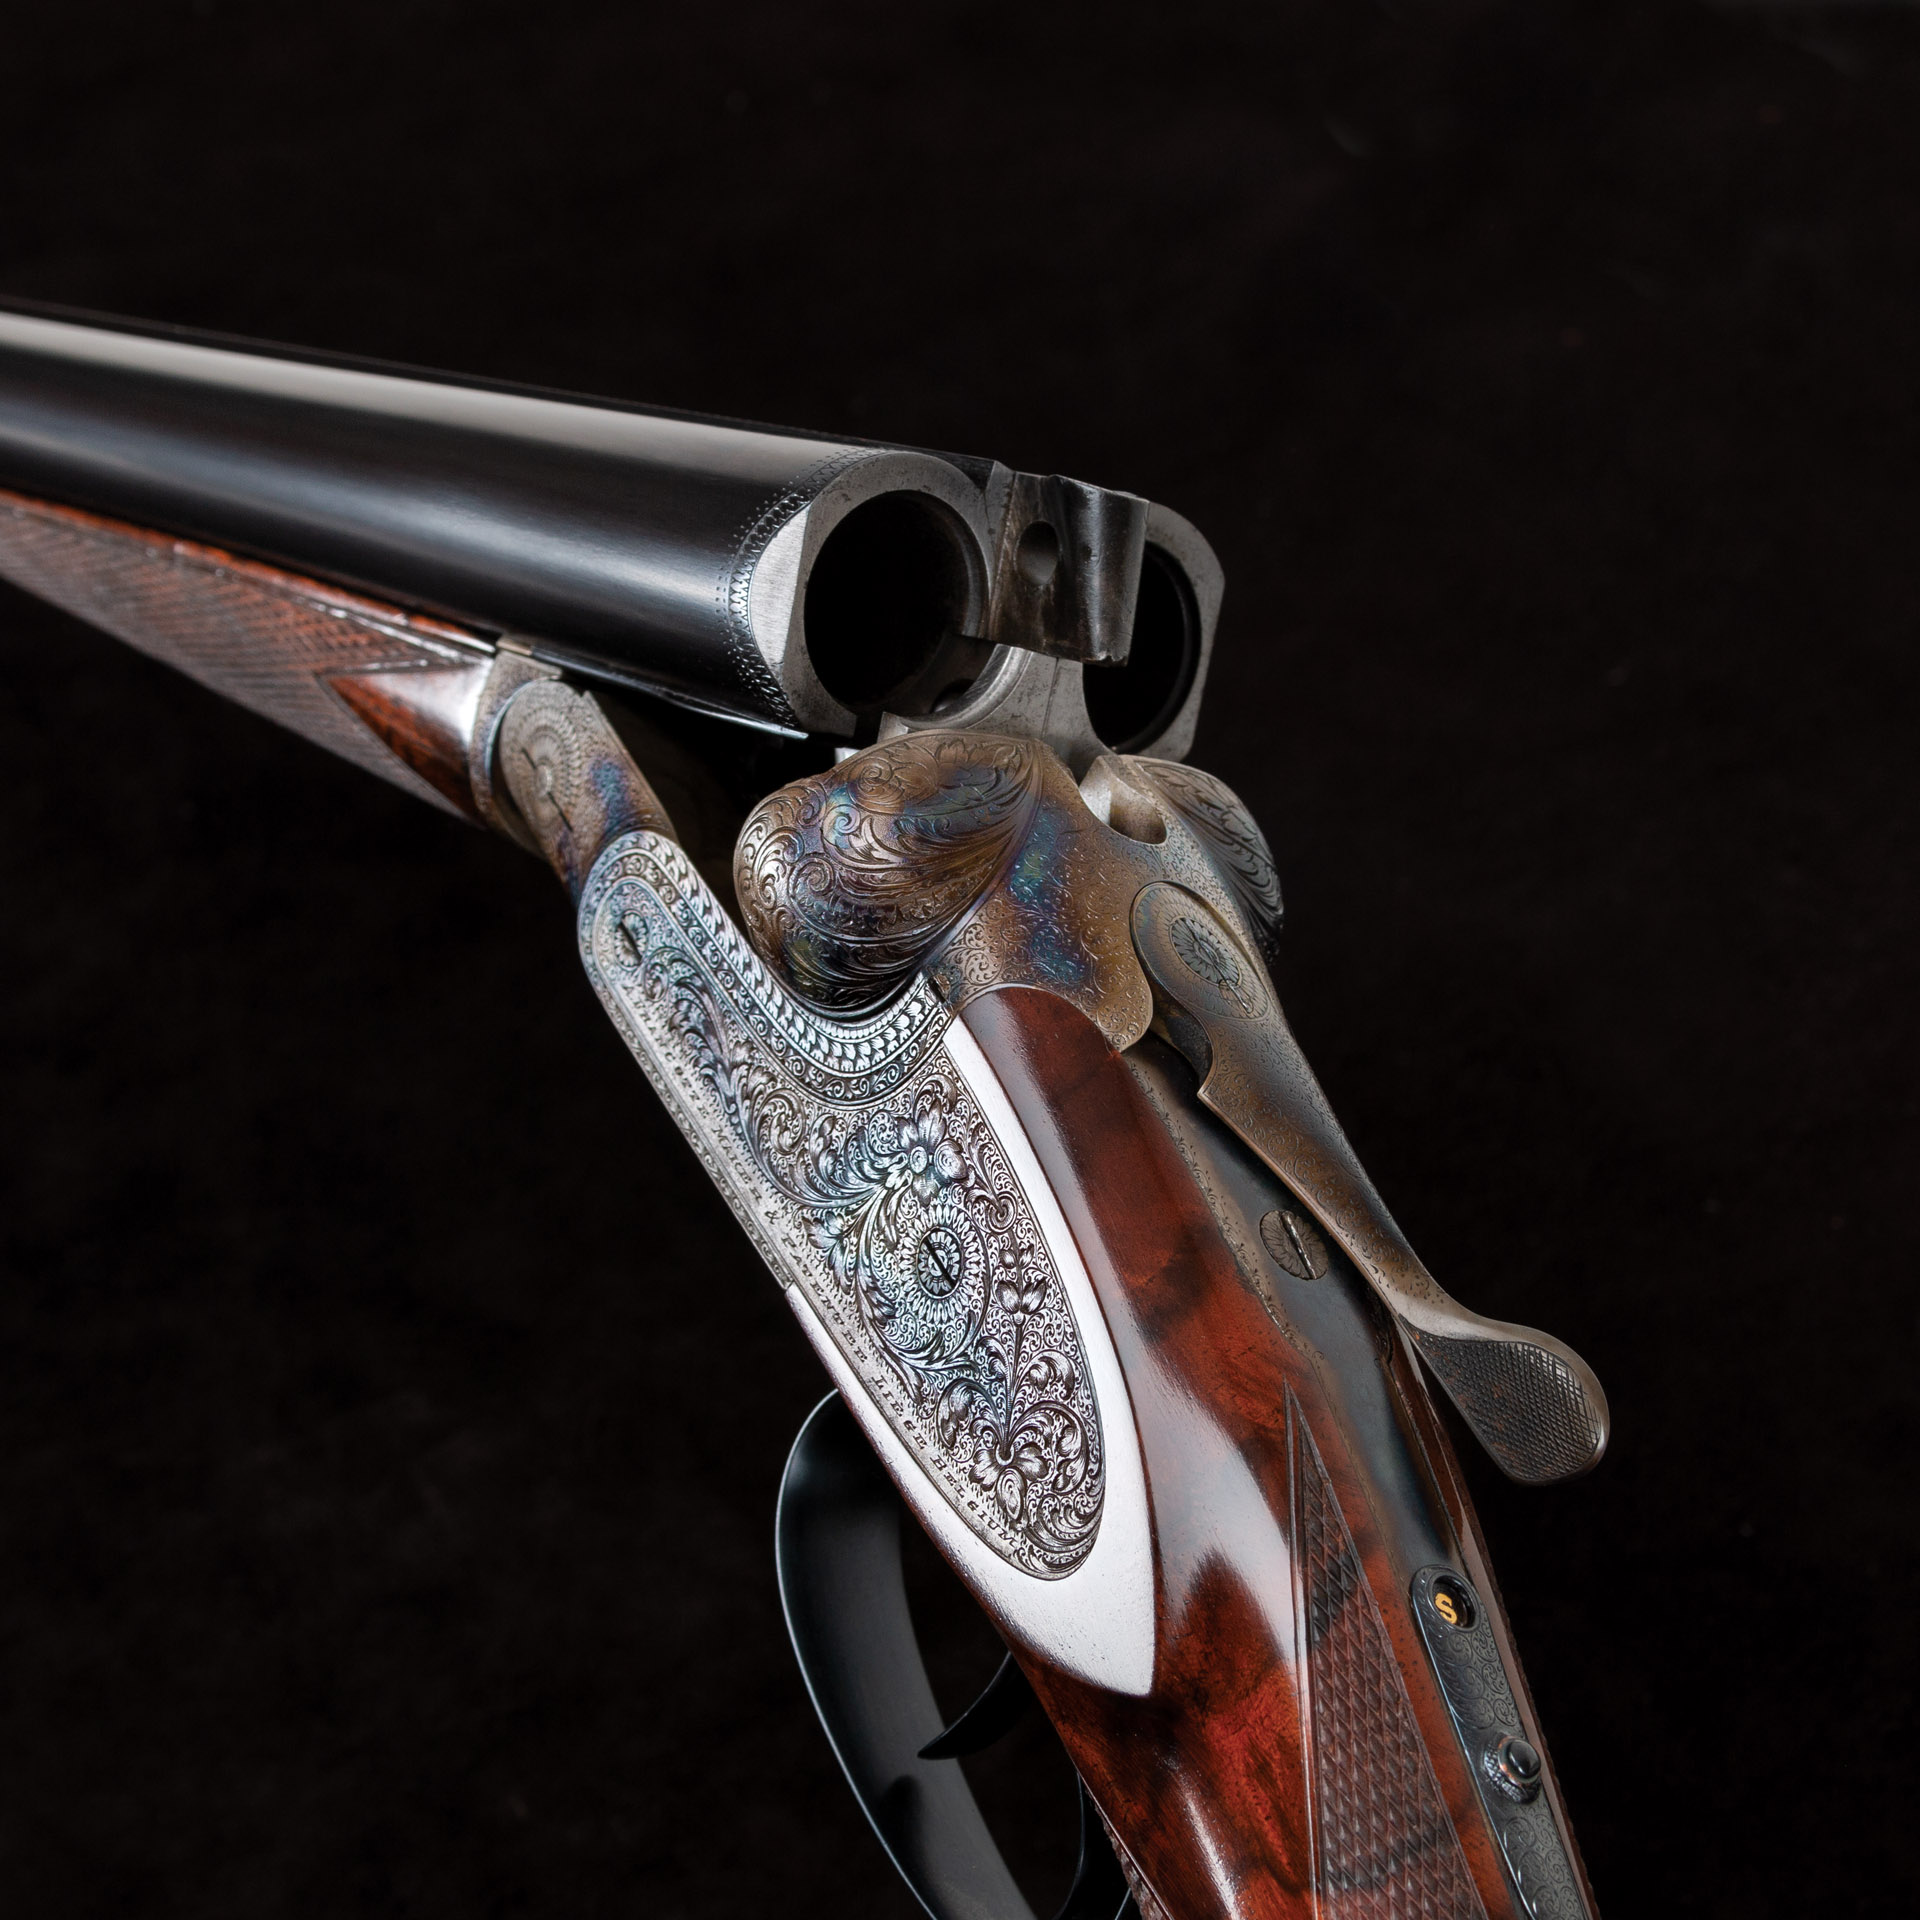 Photo of a Francotte Belgian 12 gauge side by side shotgun after restoration performed by Turnbull Restoration